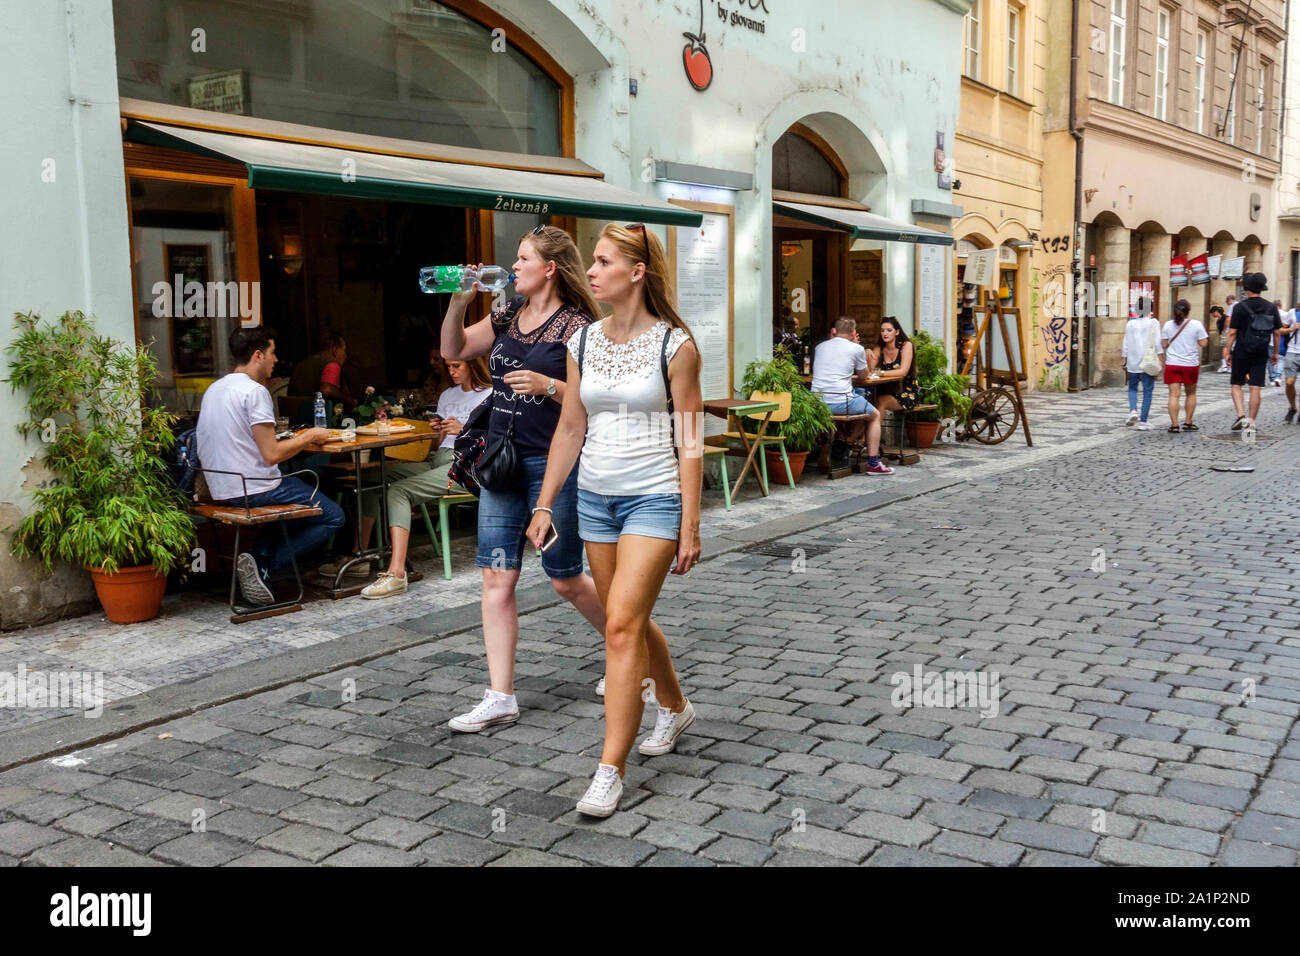 Personen, zwei Frauen in Zelezna Straße, Touristen in der Altstadt von Prag in der Tschechischen Republik Stockfoto